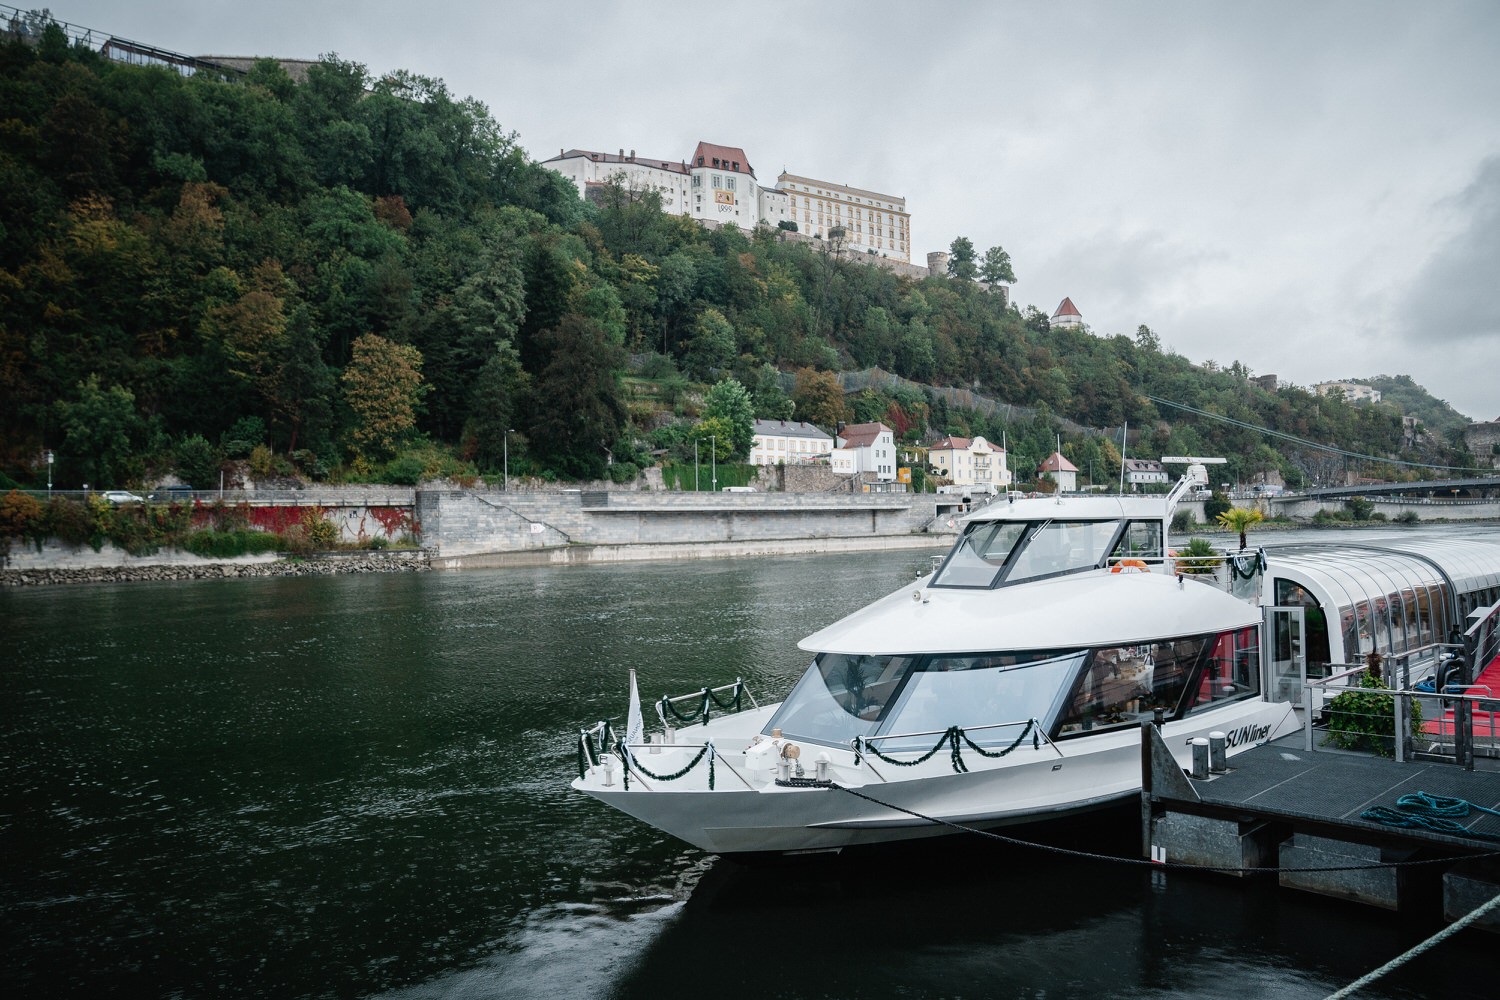 Hochzeit auf dem Cabrioshiff MS Sunliner, Passau, Blick vom Ufer auf das Schiff mit der Veste Oberhaus im Hintergrund